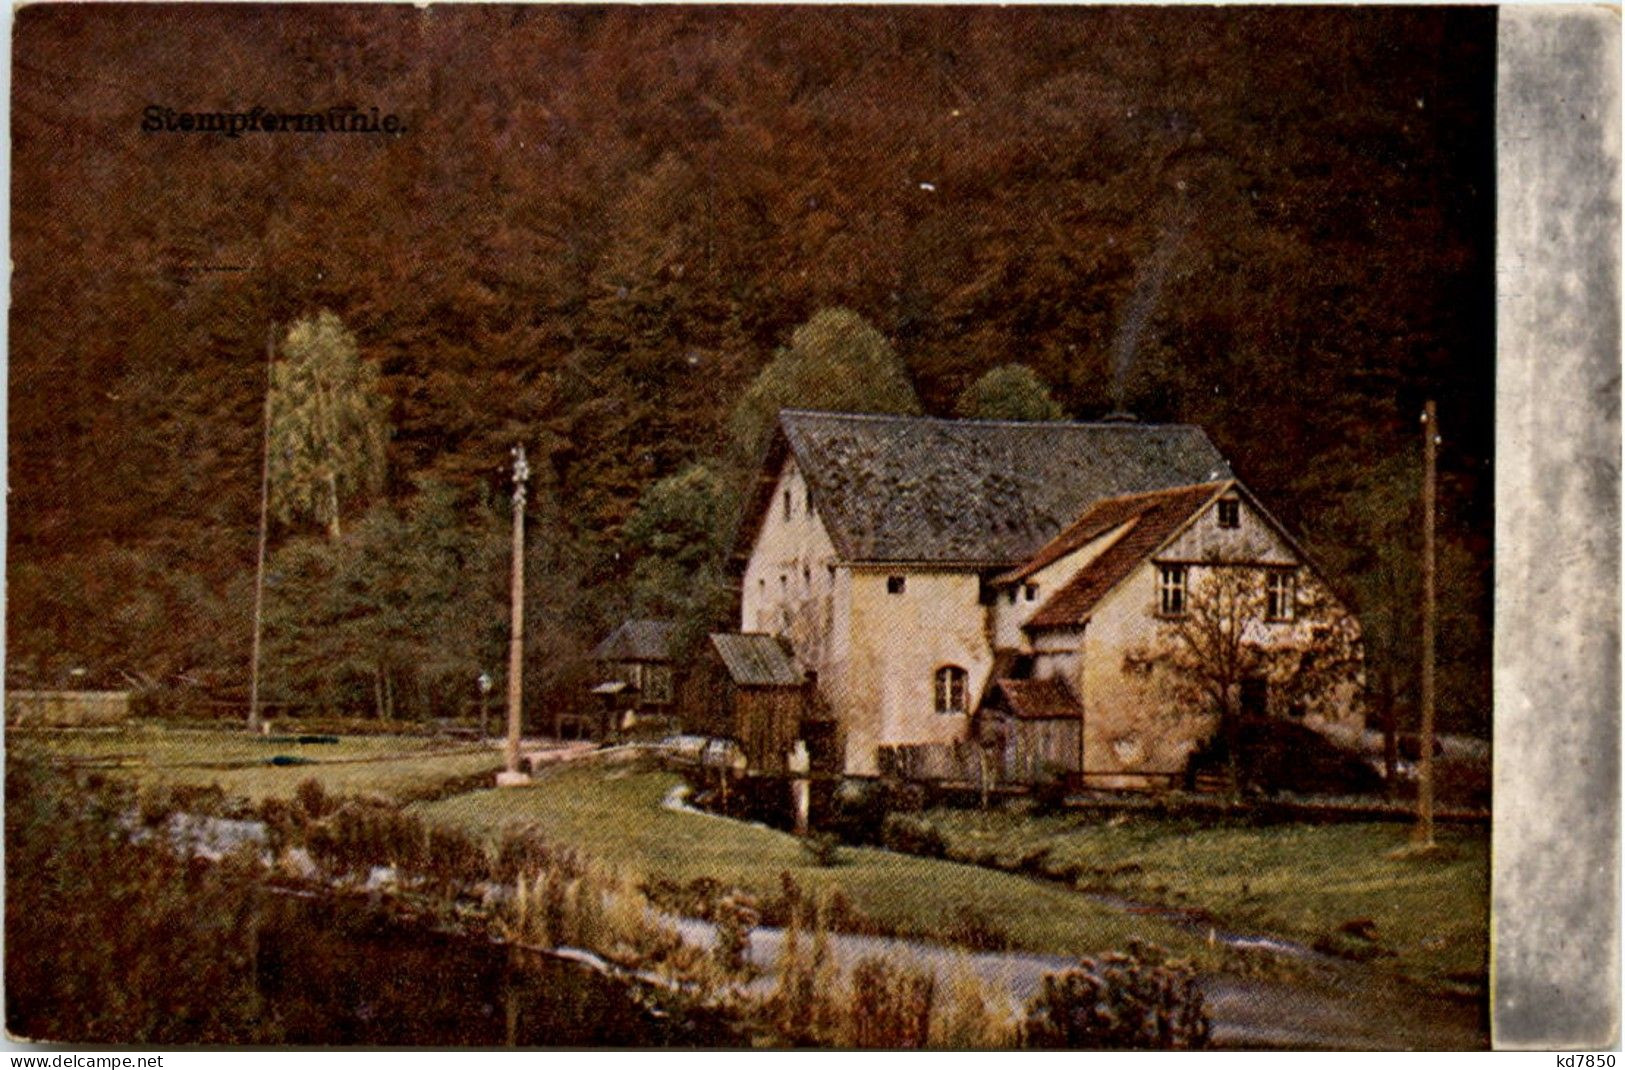 Gössweinstein - Stempfermühle - Forchheim